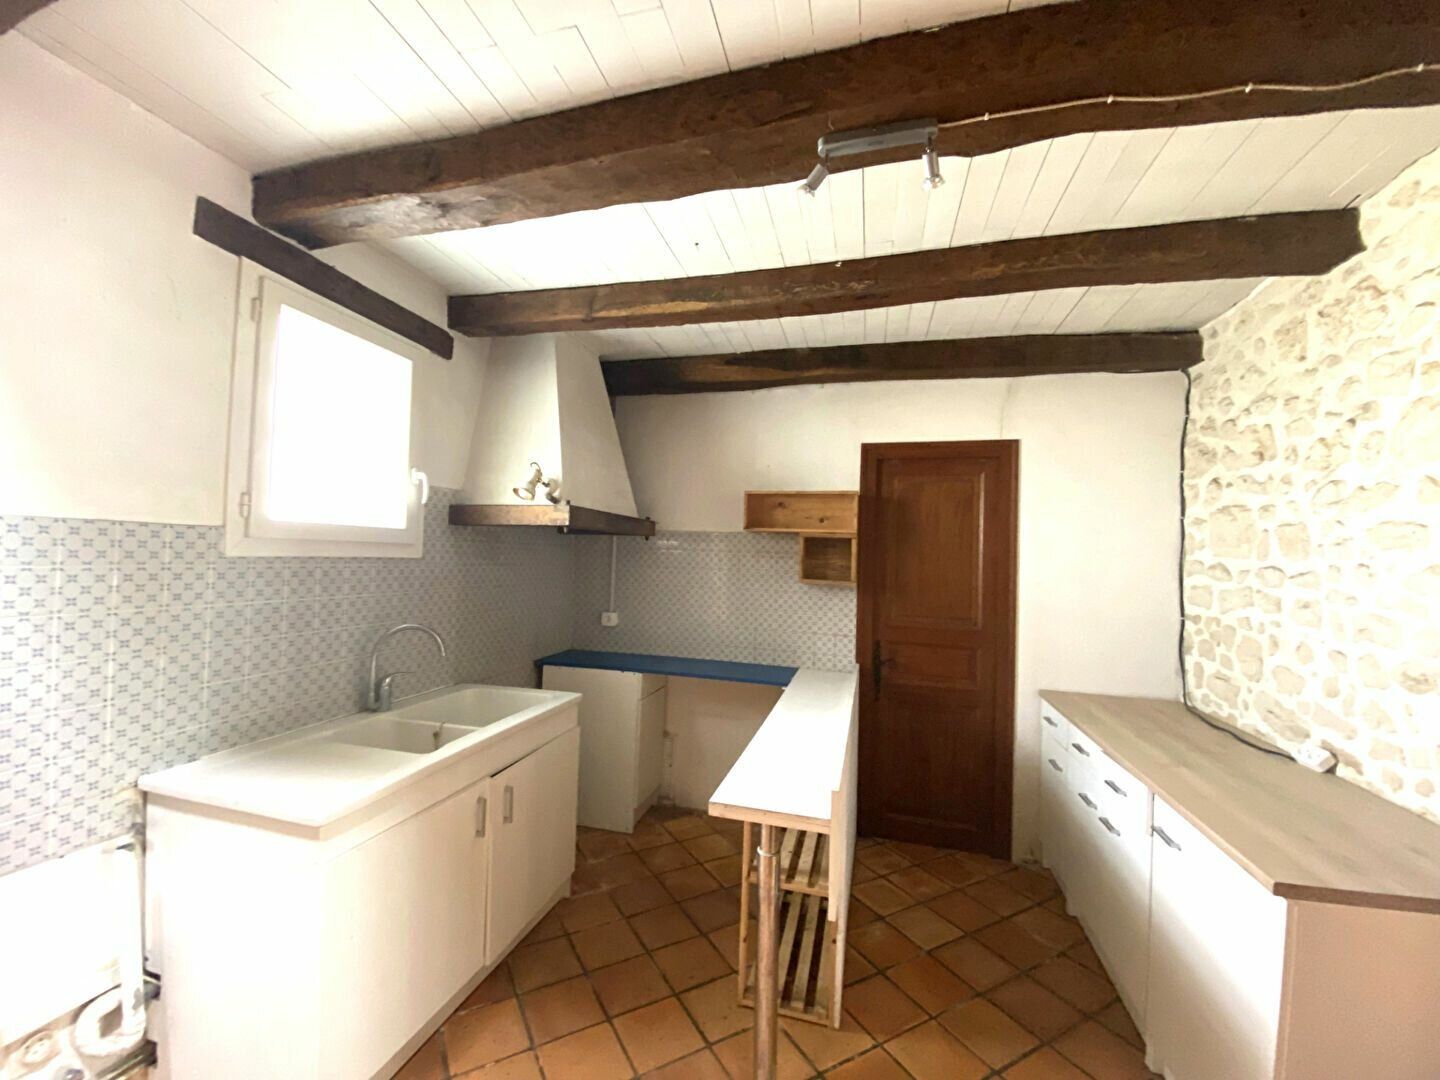 Maison à vendre 3 130m2 à Nieul-lès-Saintes vignette-7